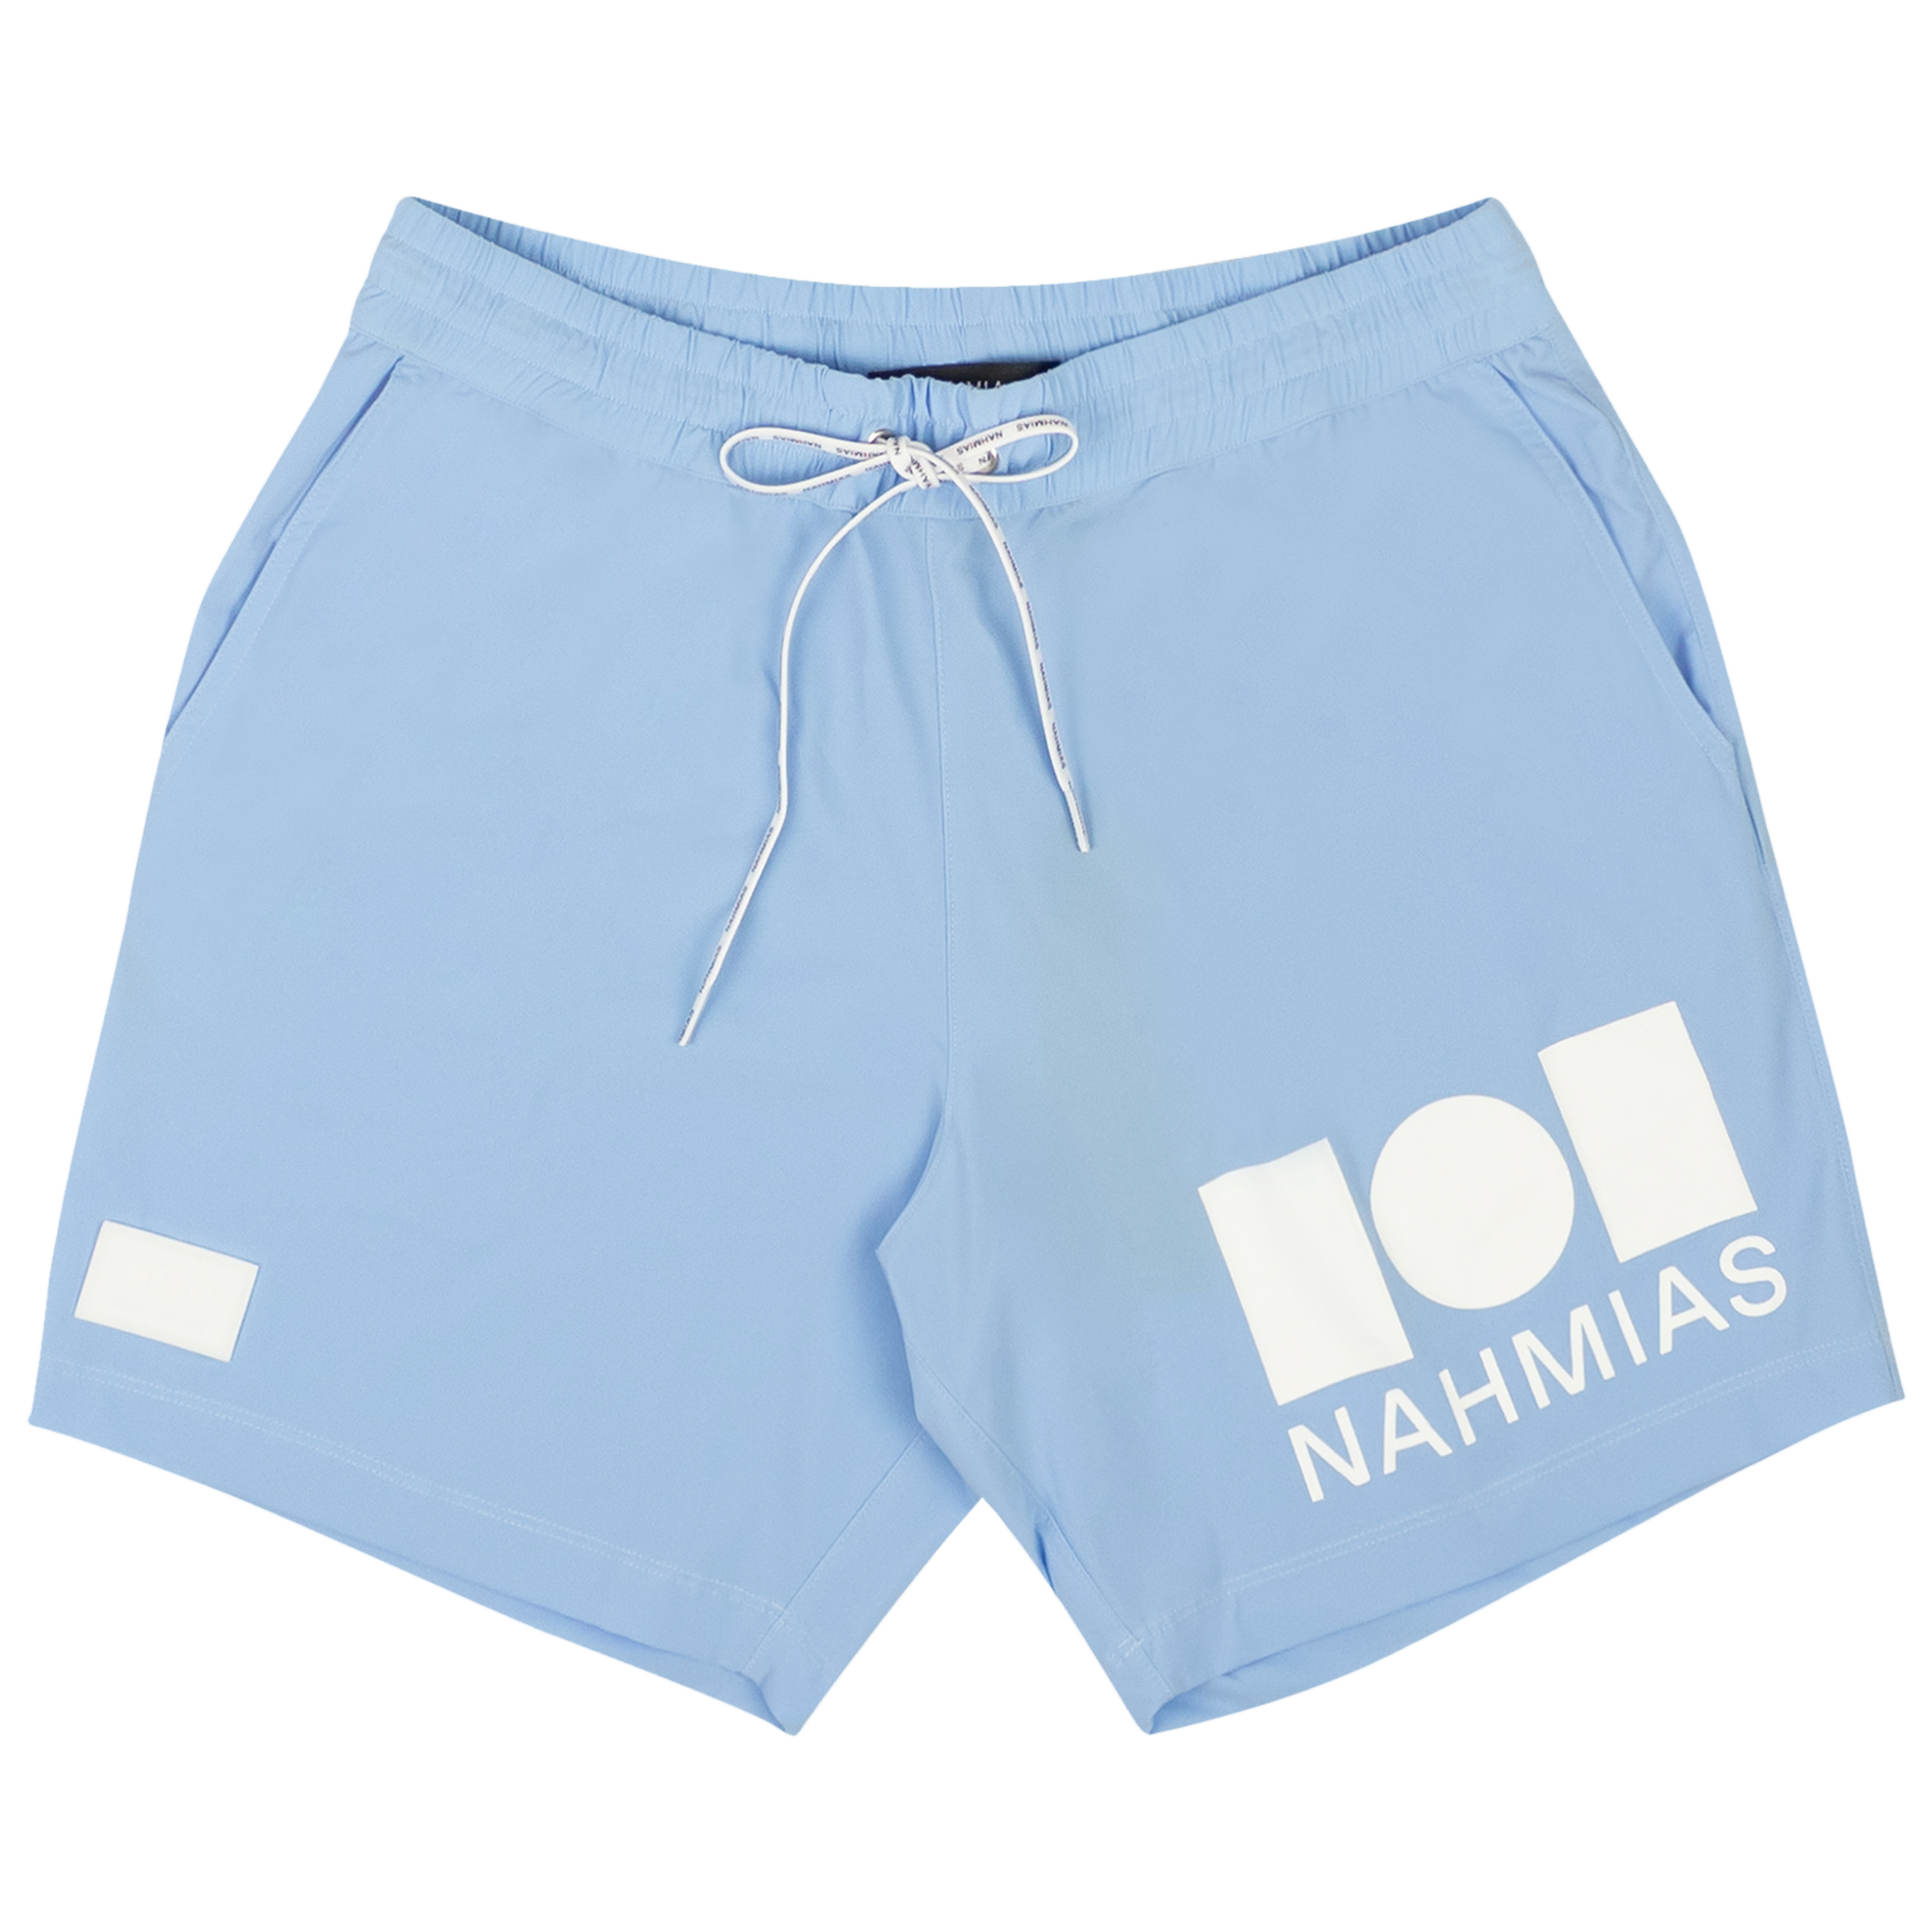 Pre-owned Nahmias Graphic Logo Design Swim Trunks 'blue'